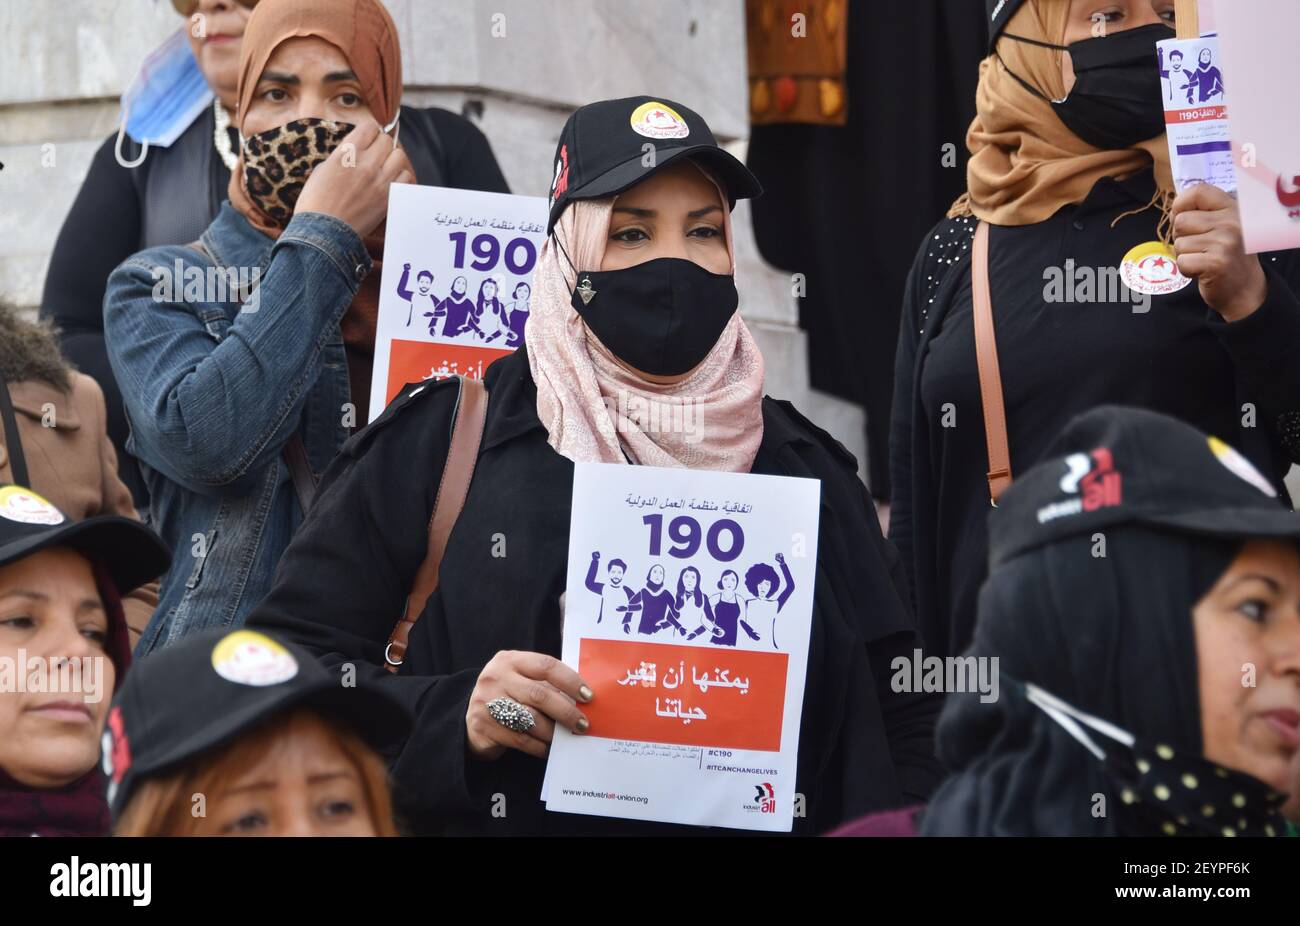 Während der Demonstration halten Demonstranten Plakate.Wiederbelebung der Aktivitäten des Internationalen Frauentages, die dem 8. März entsprechen, und um den tunesischen Staat dazu zu bewegen, die Konvention der Internationalen Arbeitsorganisation Nr. 190 zu ratifizieren, um die Gewalt an Arbeitsplätzen für einen Raum zu beseitigen, der frei von Belästigung und Gewalt gegen Frauen ist. Stockfoto